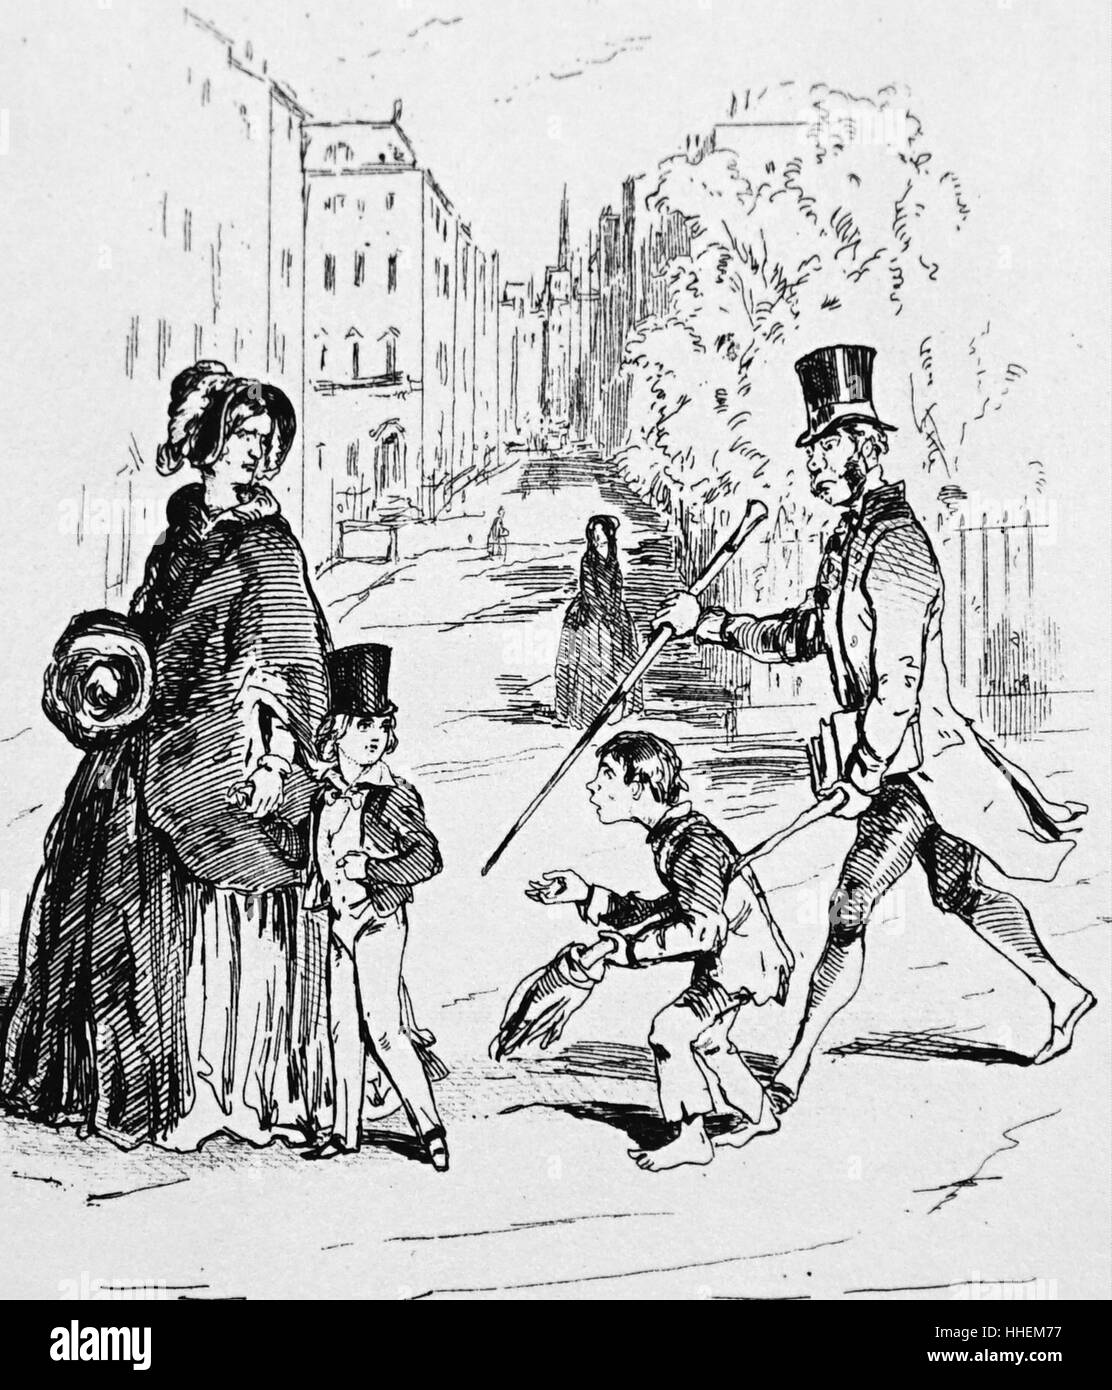 Ilustración titulada "Los ricos y los pobres en una plaza de Londres un domingo por la mañana" por William Makepeace Thackeray (1811-1863), novelista inglés . Fecha del siglo XIX Foto de stock